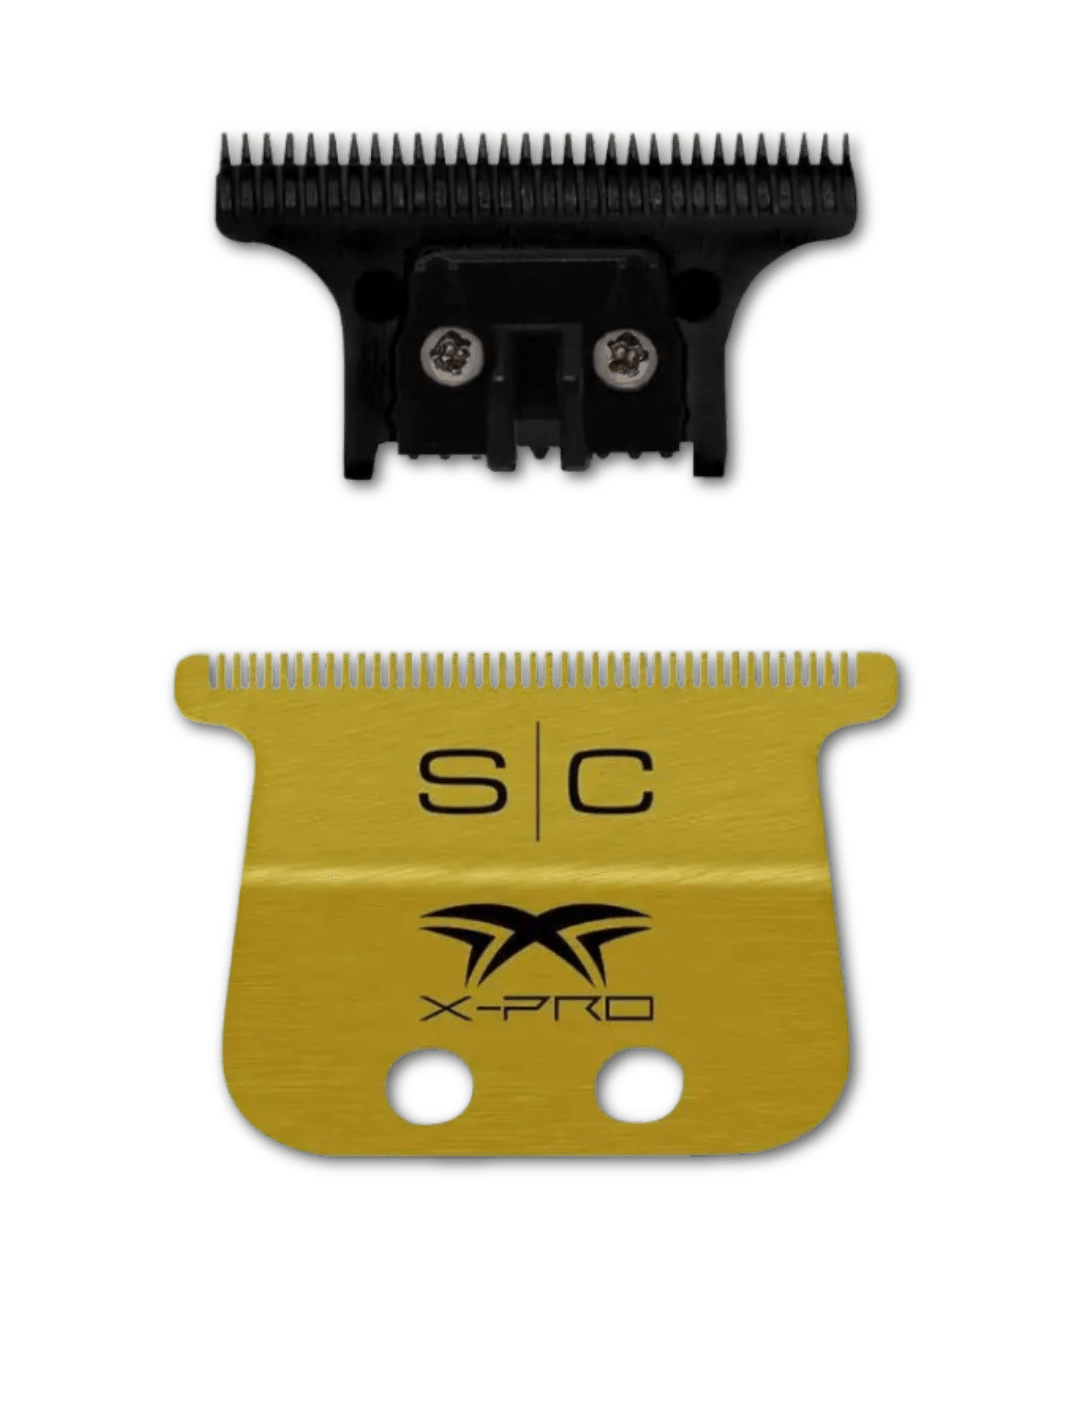 STYLECRAFT X-PRO Wide Gold mit The One DLC Blade, präzisionsgeschmiedete Gold Titanium-Klingen für professionelle Haarschneider bei Phullcutz verfügbar.